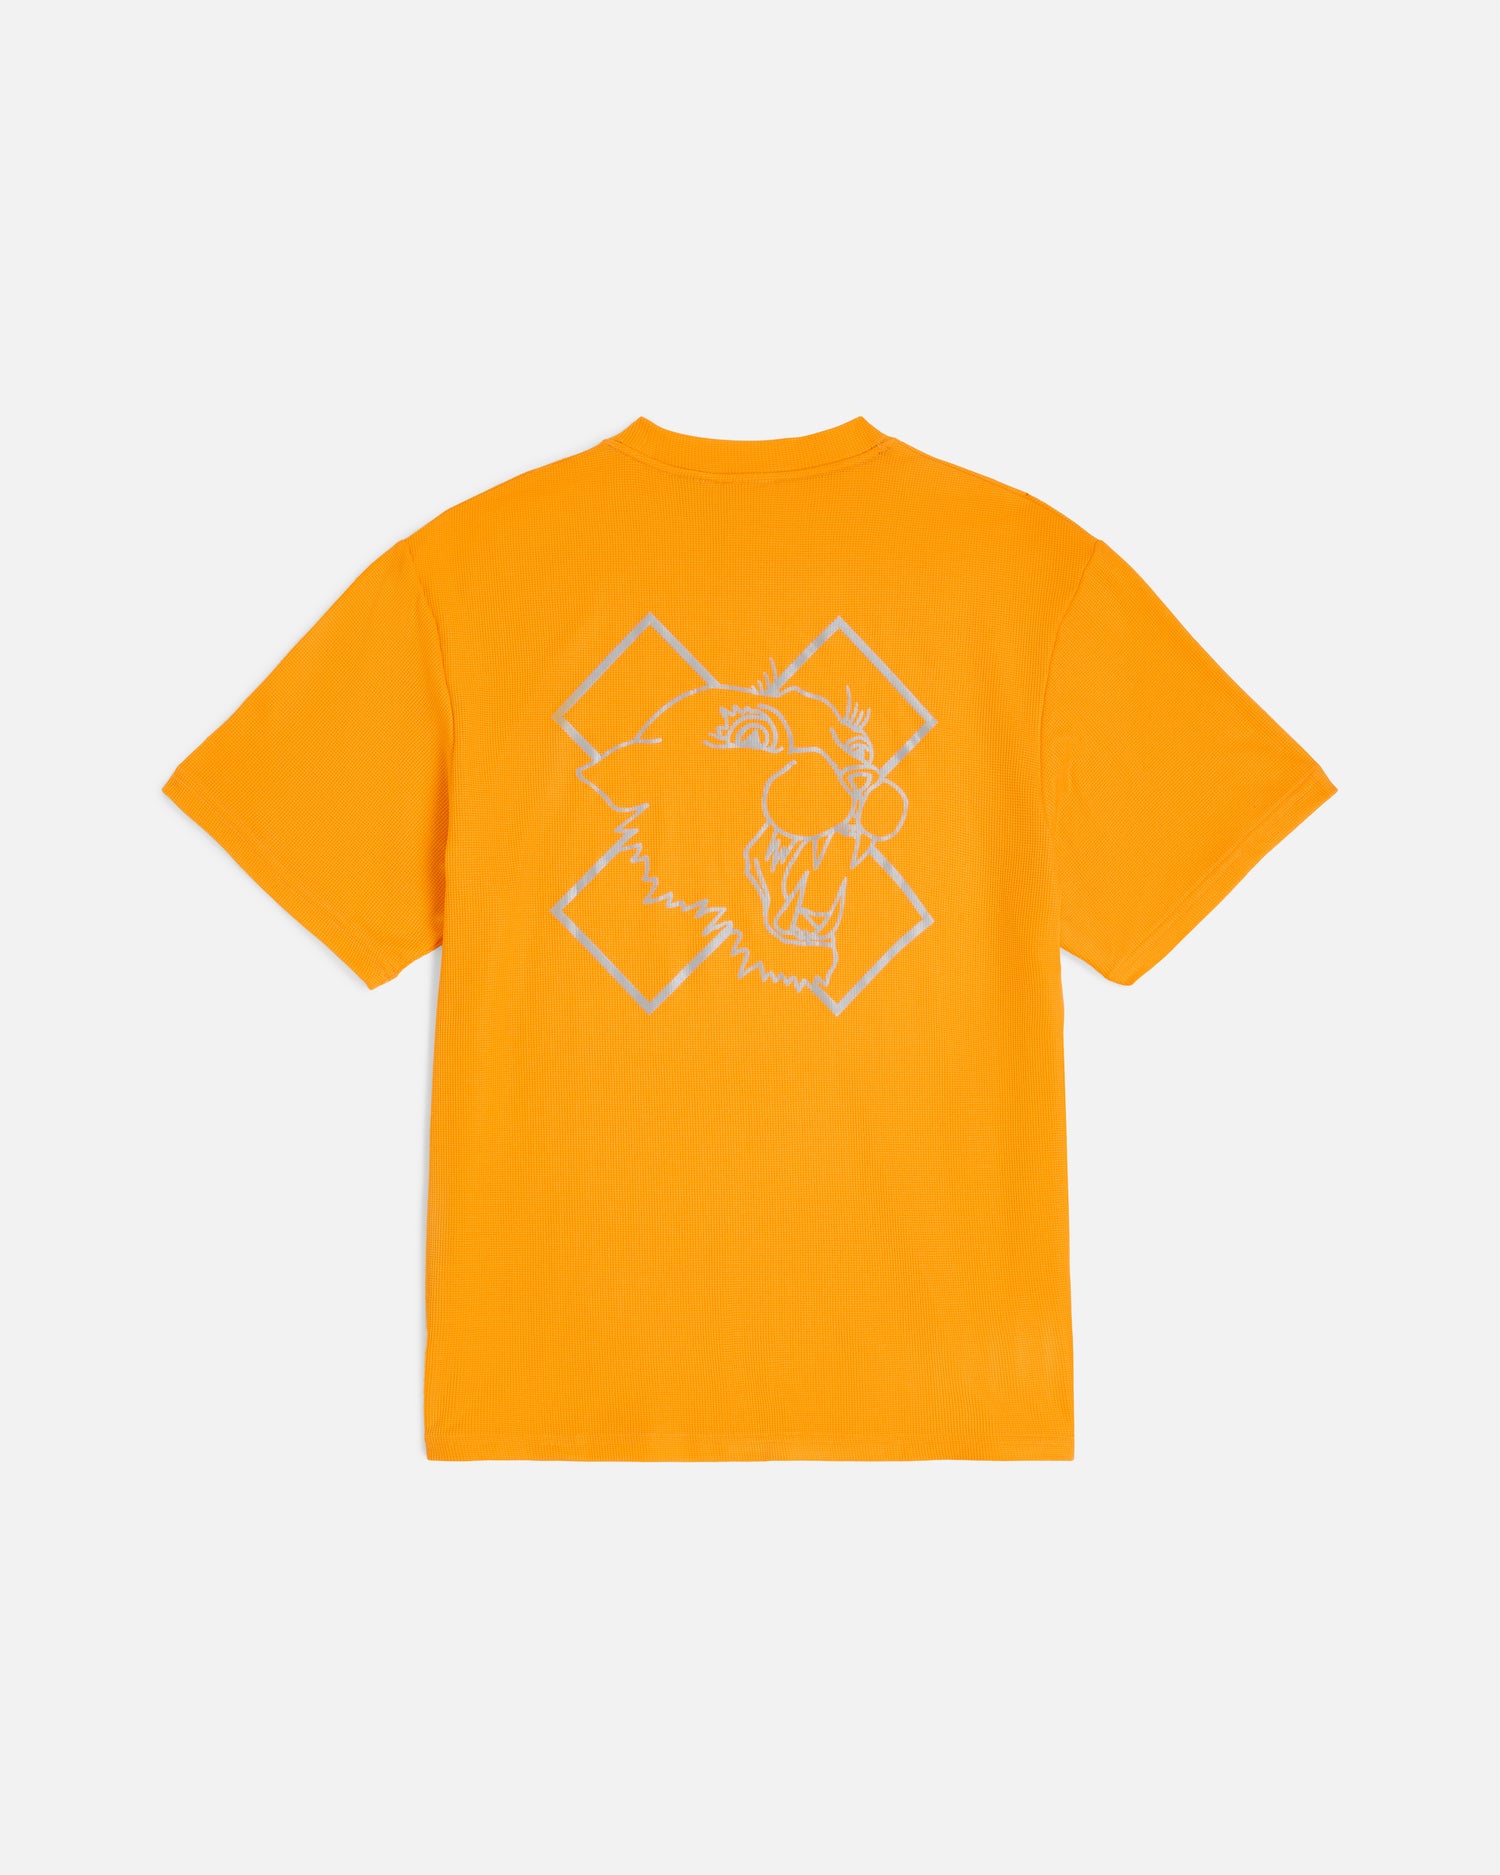 Nike x Patta Running Team T-shirt (Sundial)